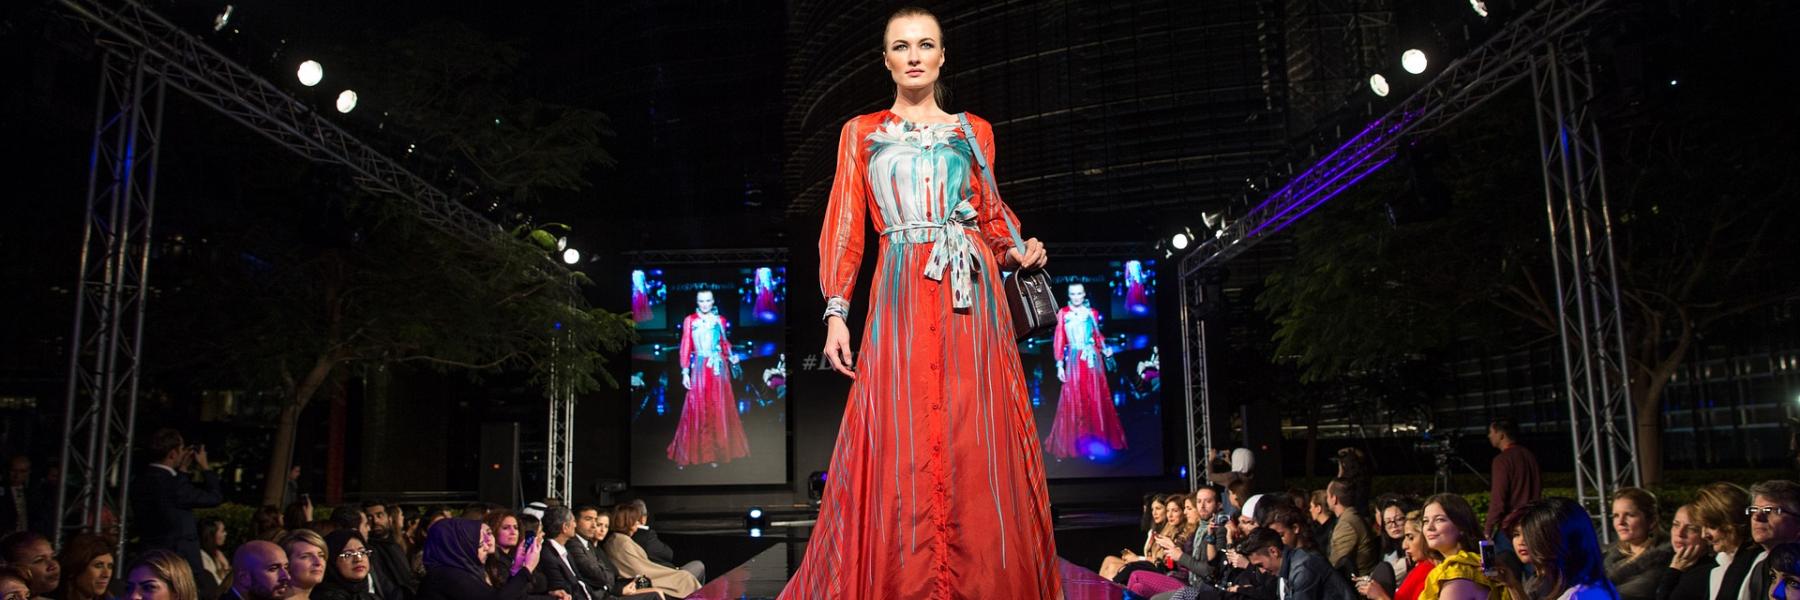 عالم الموضة يزهو مع "فاشن فورود دبي" في إبريل